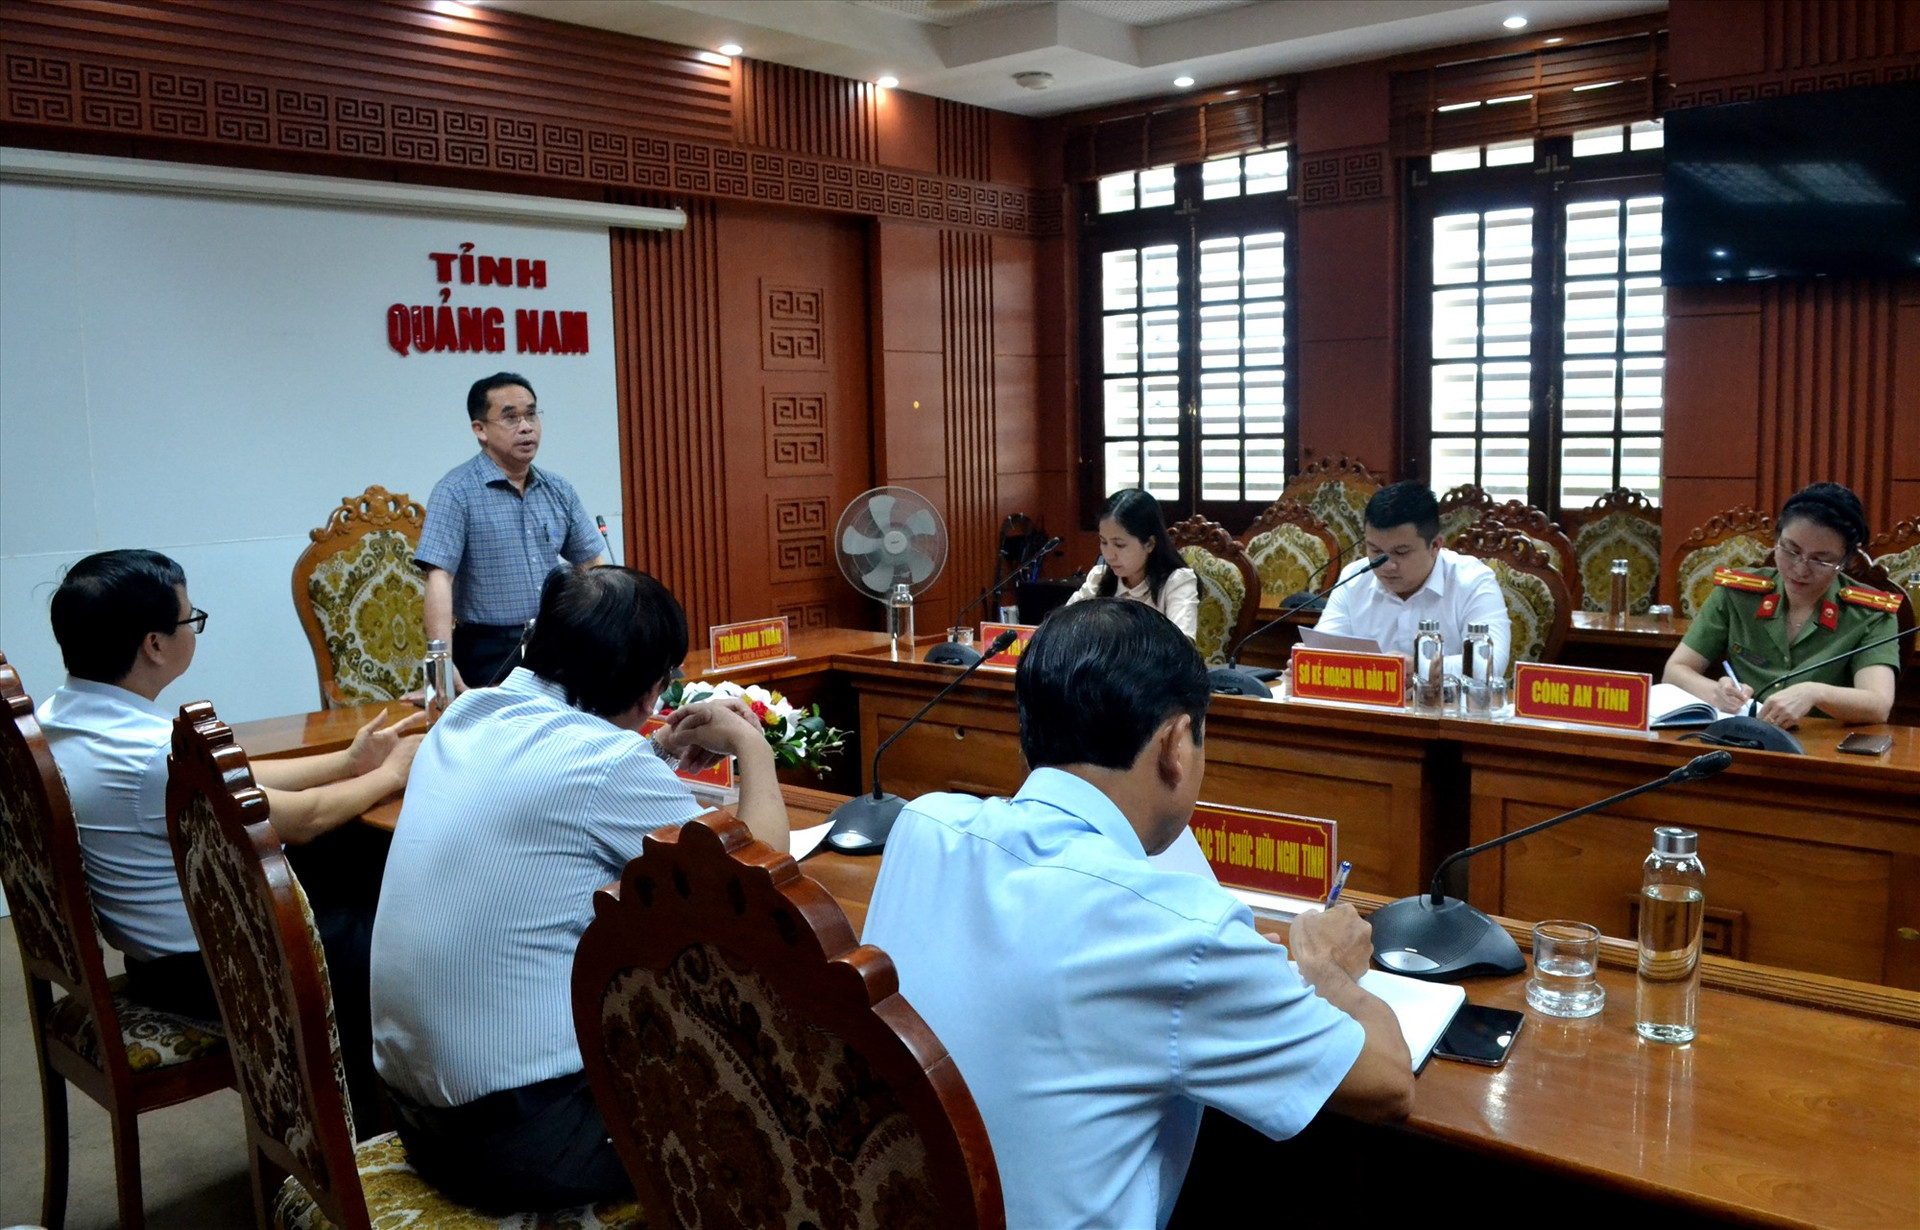 Phó Chủ tịch UBND tỉnh Trần Anh Tuấn yêu cầu các ngành chức năng rà soát lại các chương trình, dự án PCPNN để phát huy các thành quả, khắc phục bất cập, góp phần thúc đẩy phát triển kinh tế - xã hội trên địa bàn. Ảnh: VIỆT NGUYỄN